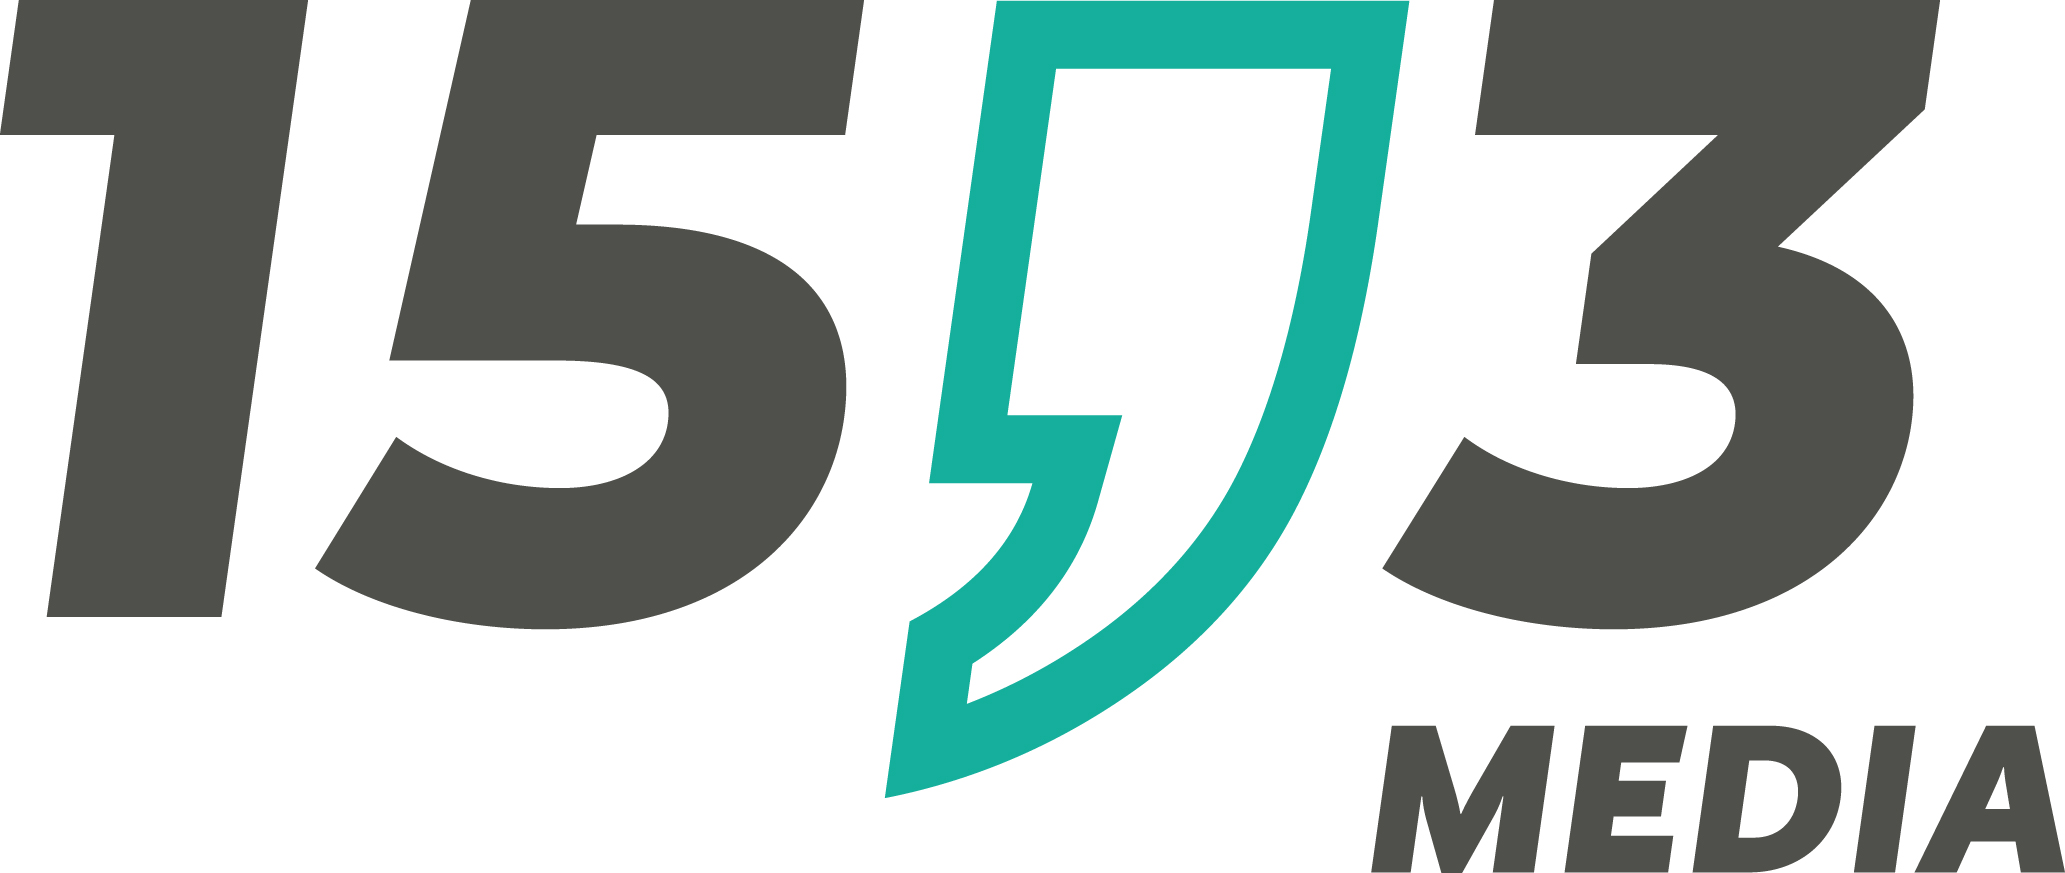 15komma3 media - das Logo